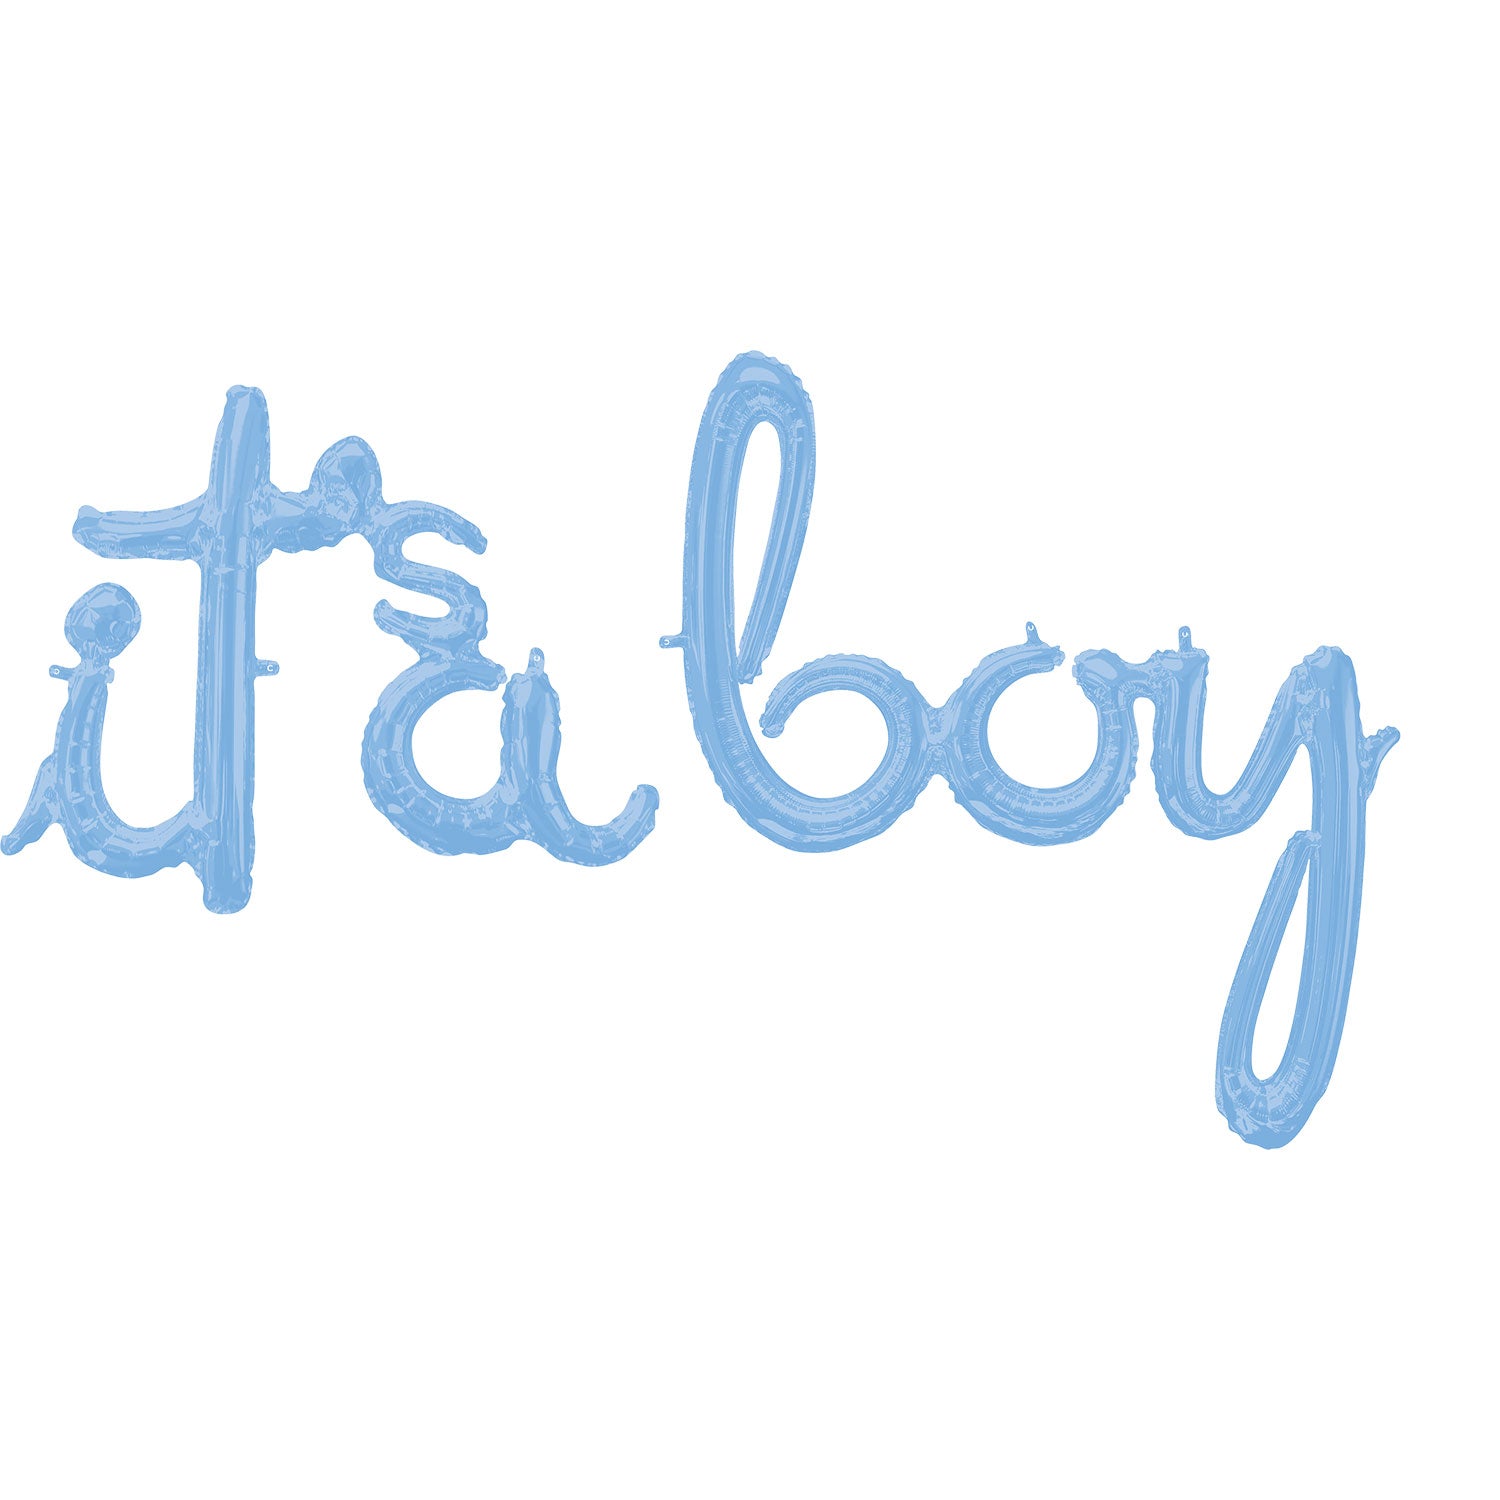 "It's A Boy" Pastel Blue Phrase Foil Ballon 